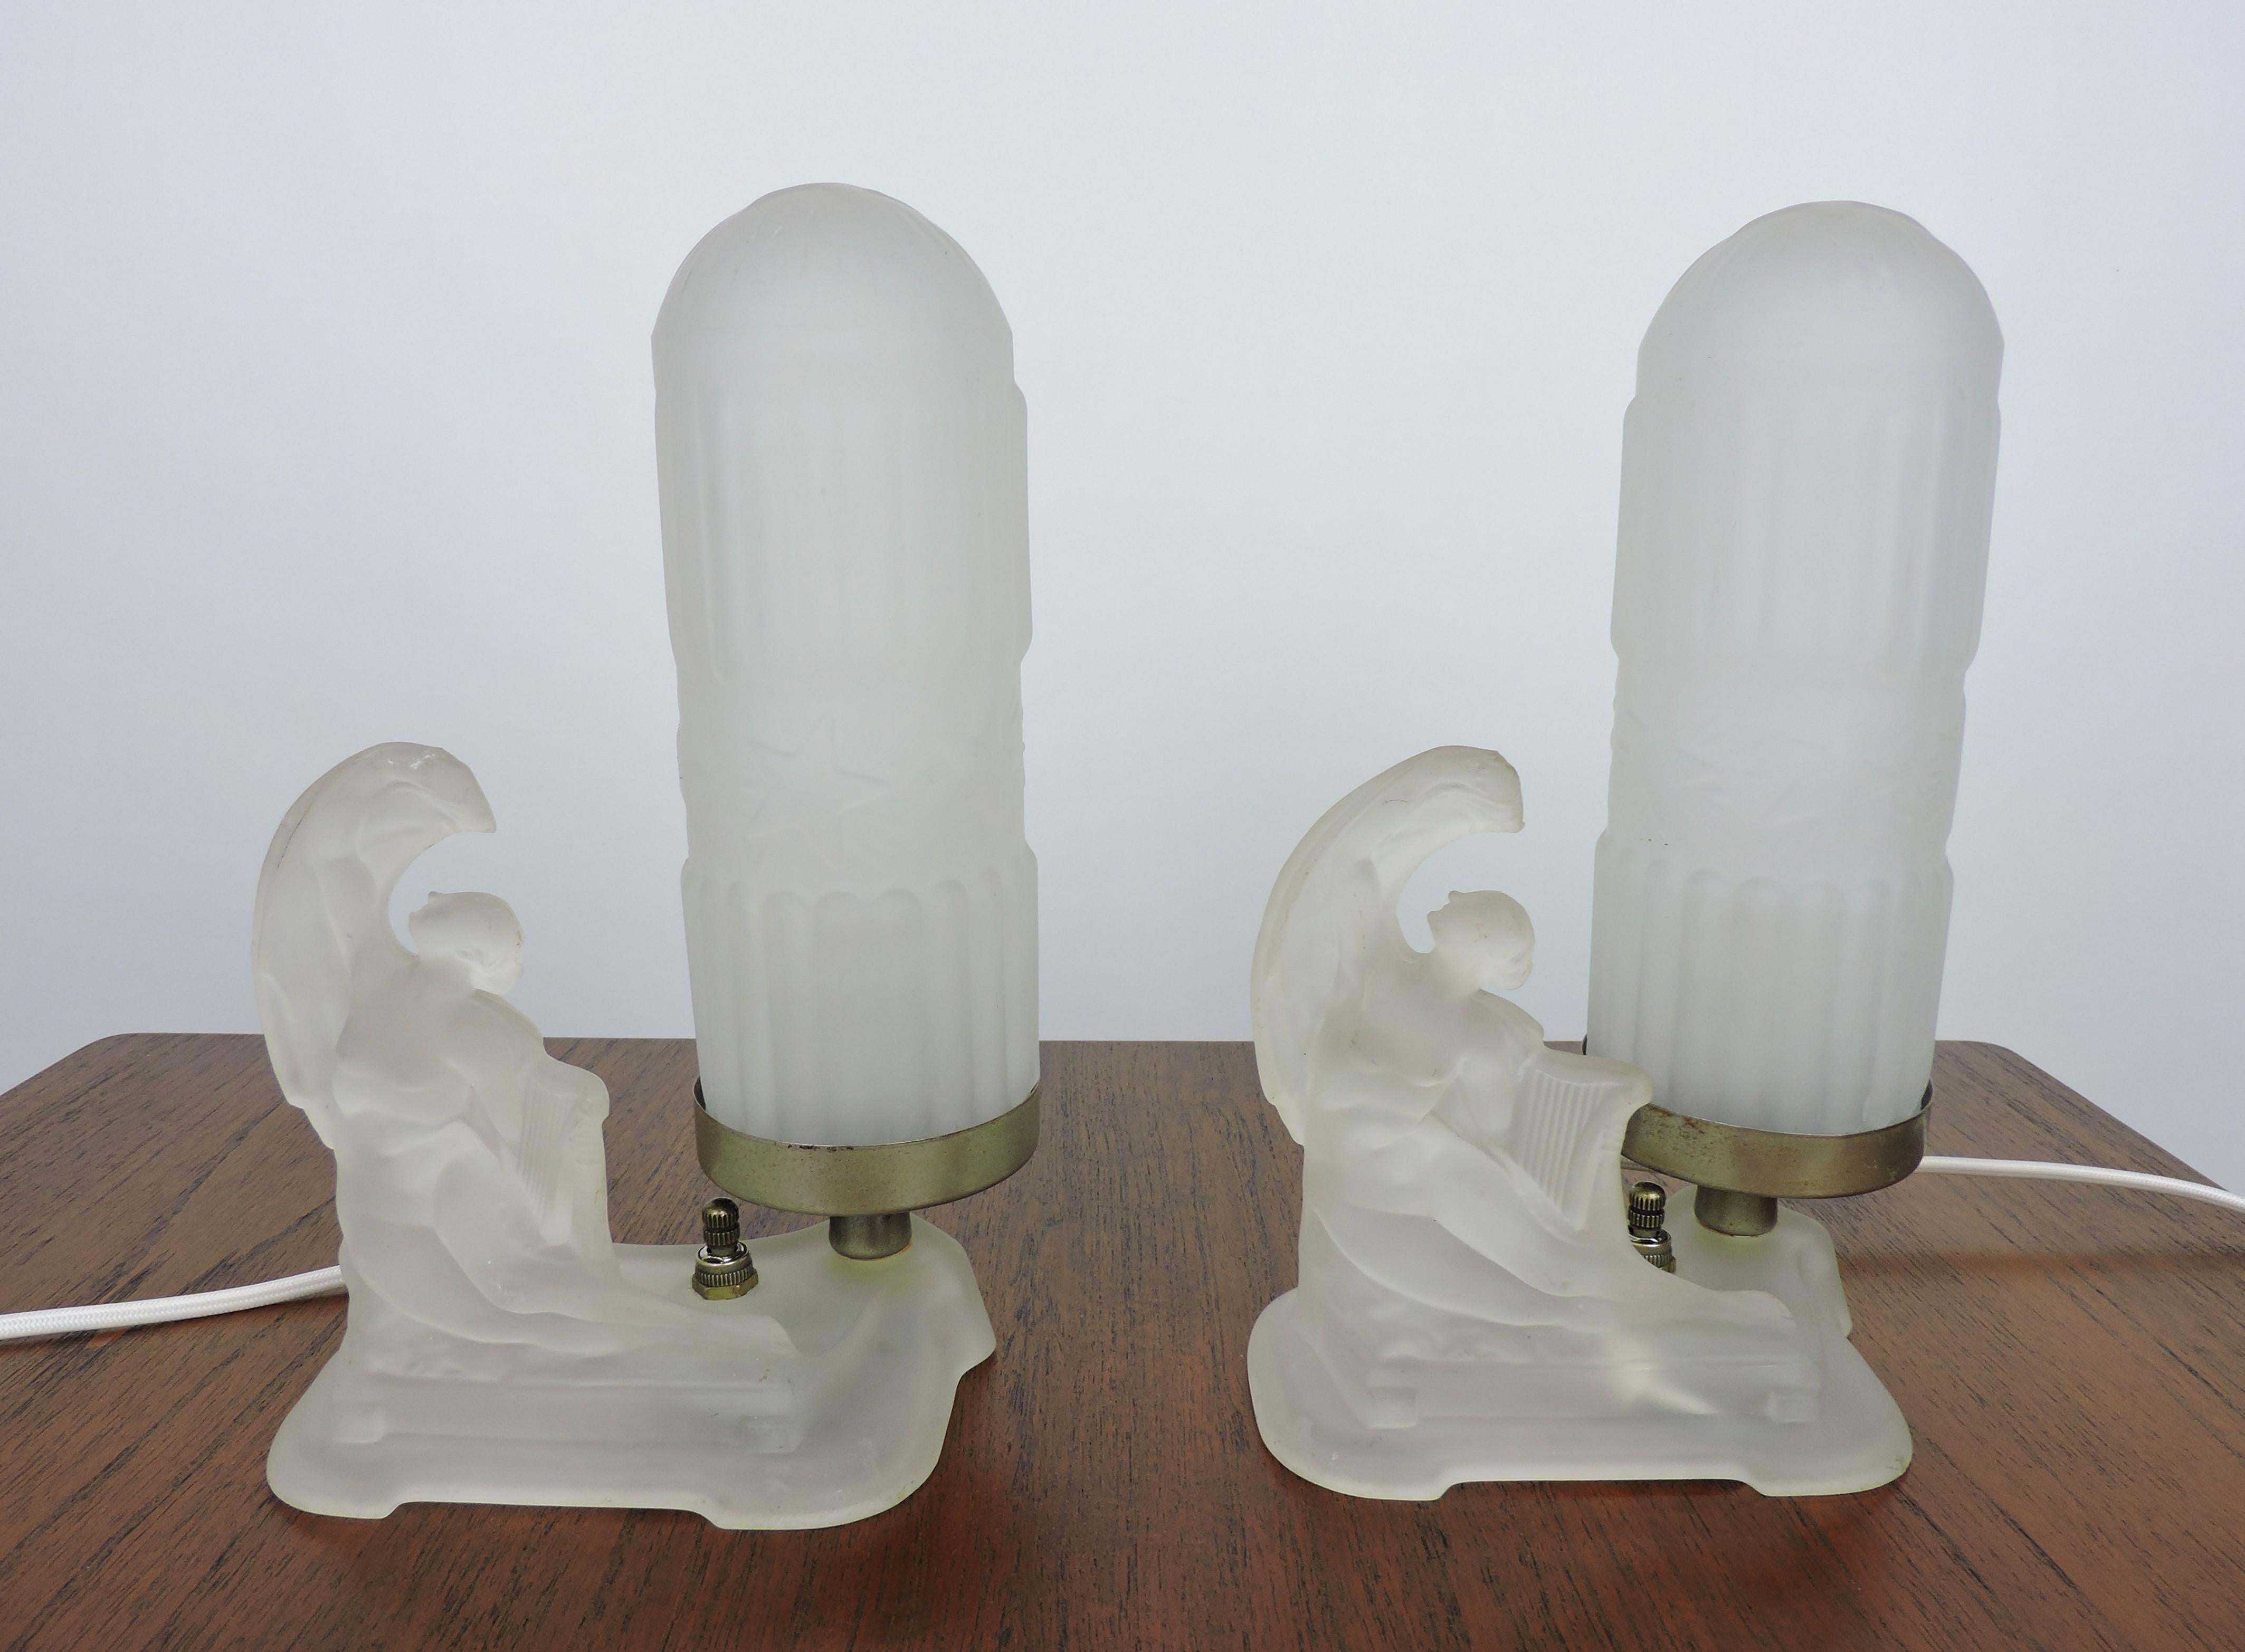 Magnifique paire de lampes de table boudoir Art Déco avec des nus en verre dépoli tenant des lyres, attribuée à McKee Glass Company de Pittsburgh. Le câblage est entièrement neuf et les cordes sont recouvertes de tissu. Les abat-jour dépolis ne sont